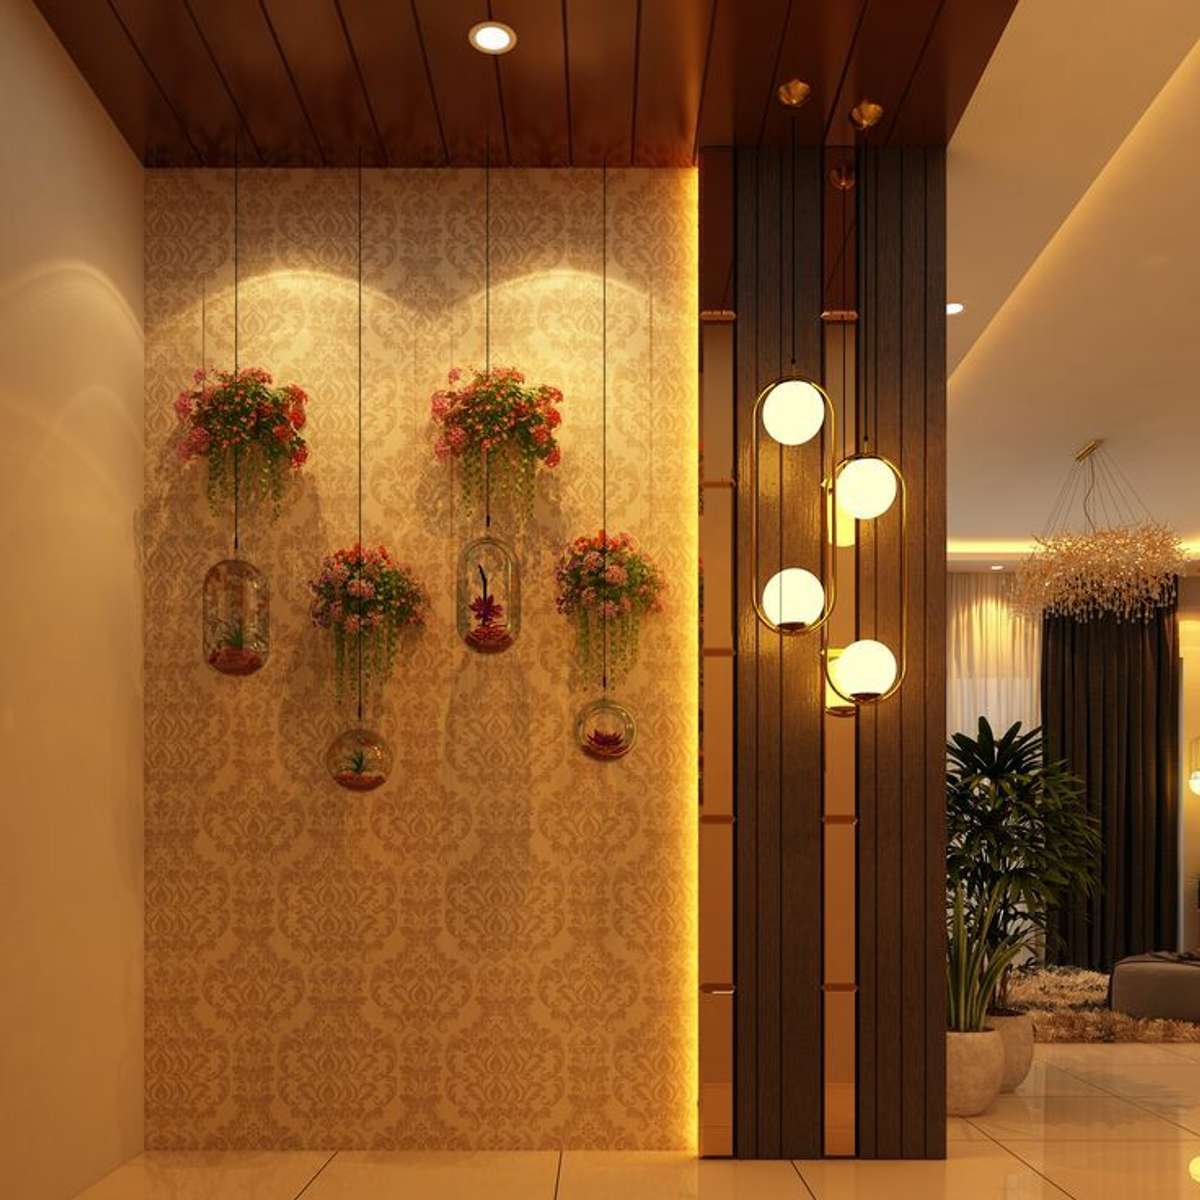 Lighting, Wall Designs by Contractor Culture Interior, Delhi | Kolo